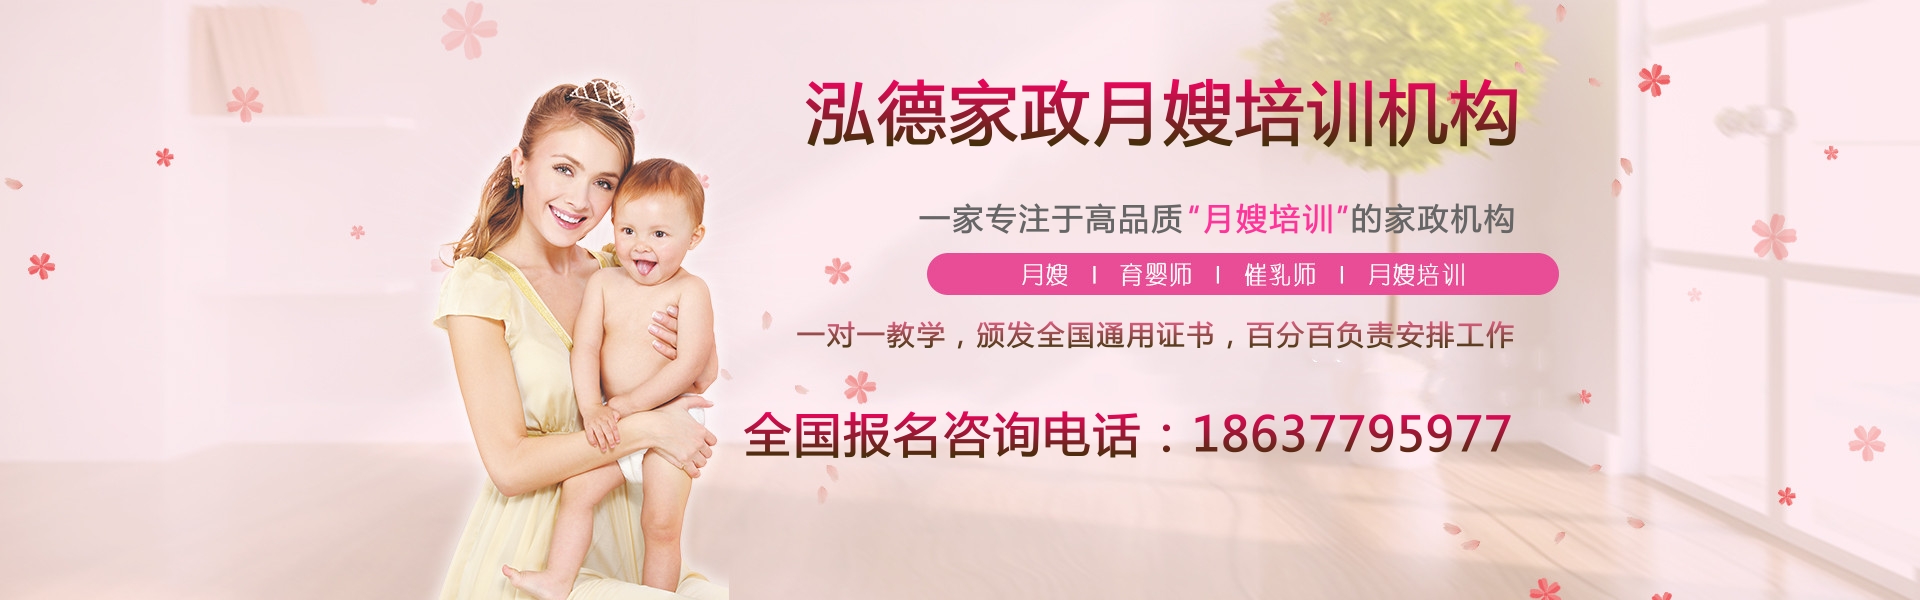 南阳卧龙区月嫂公司给您提供高品质的母婴护理服务！